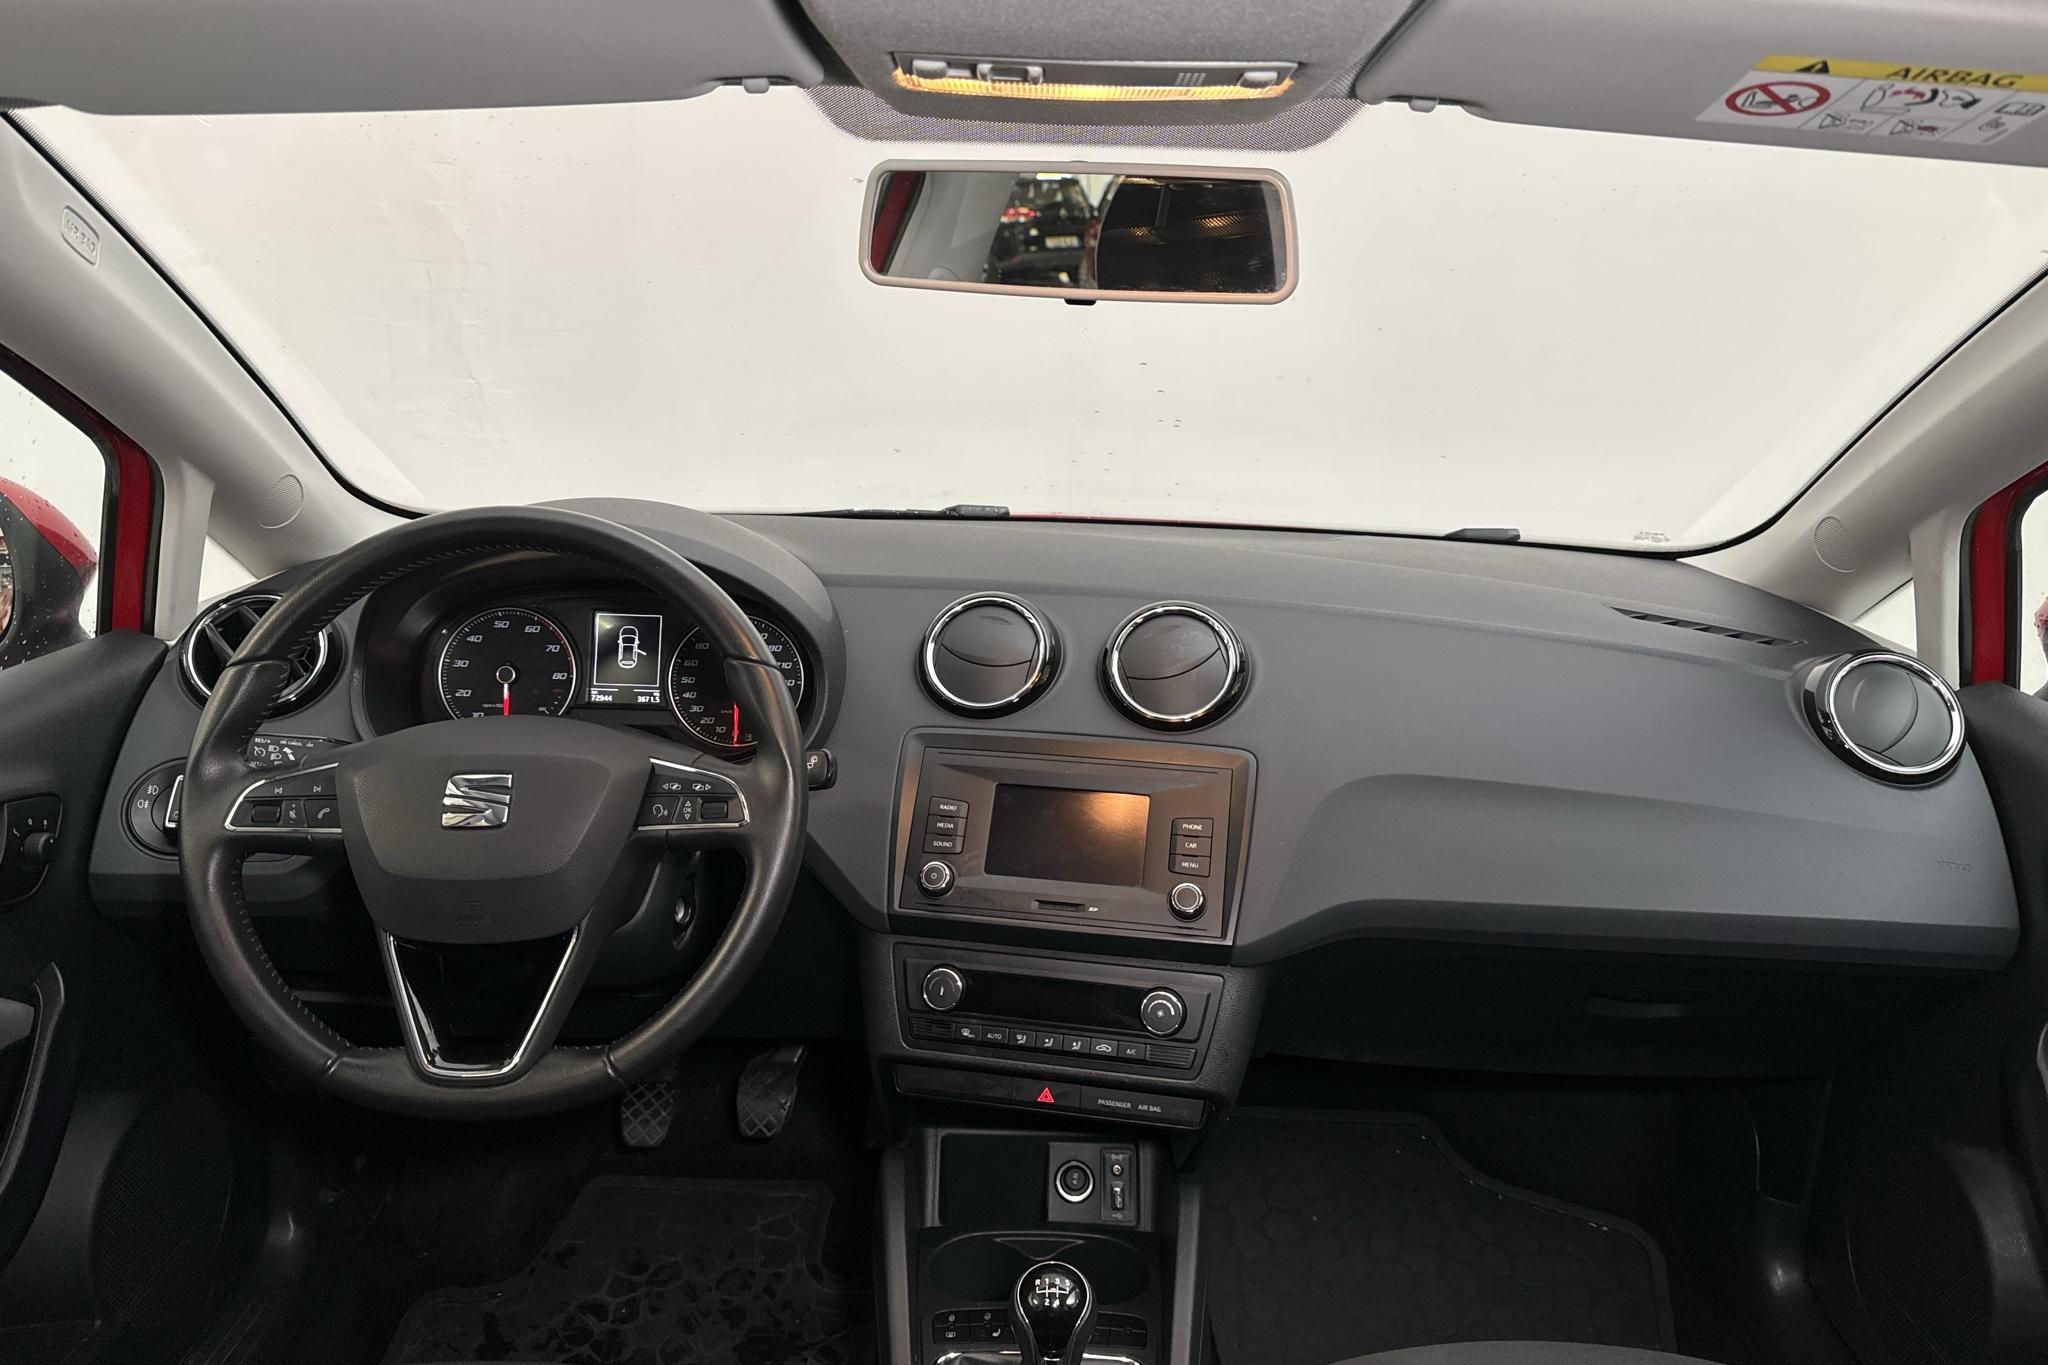 Seat Ibiza 1.2 TSI 5dr (90hk) - 72 940 km - Manual - red - 2017